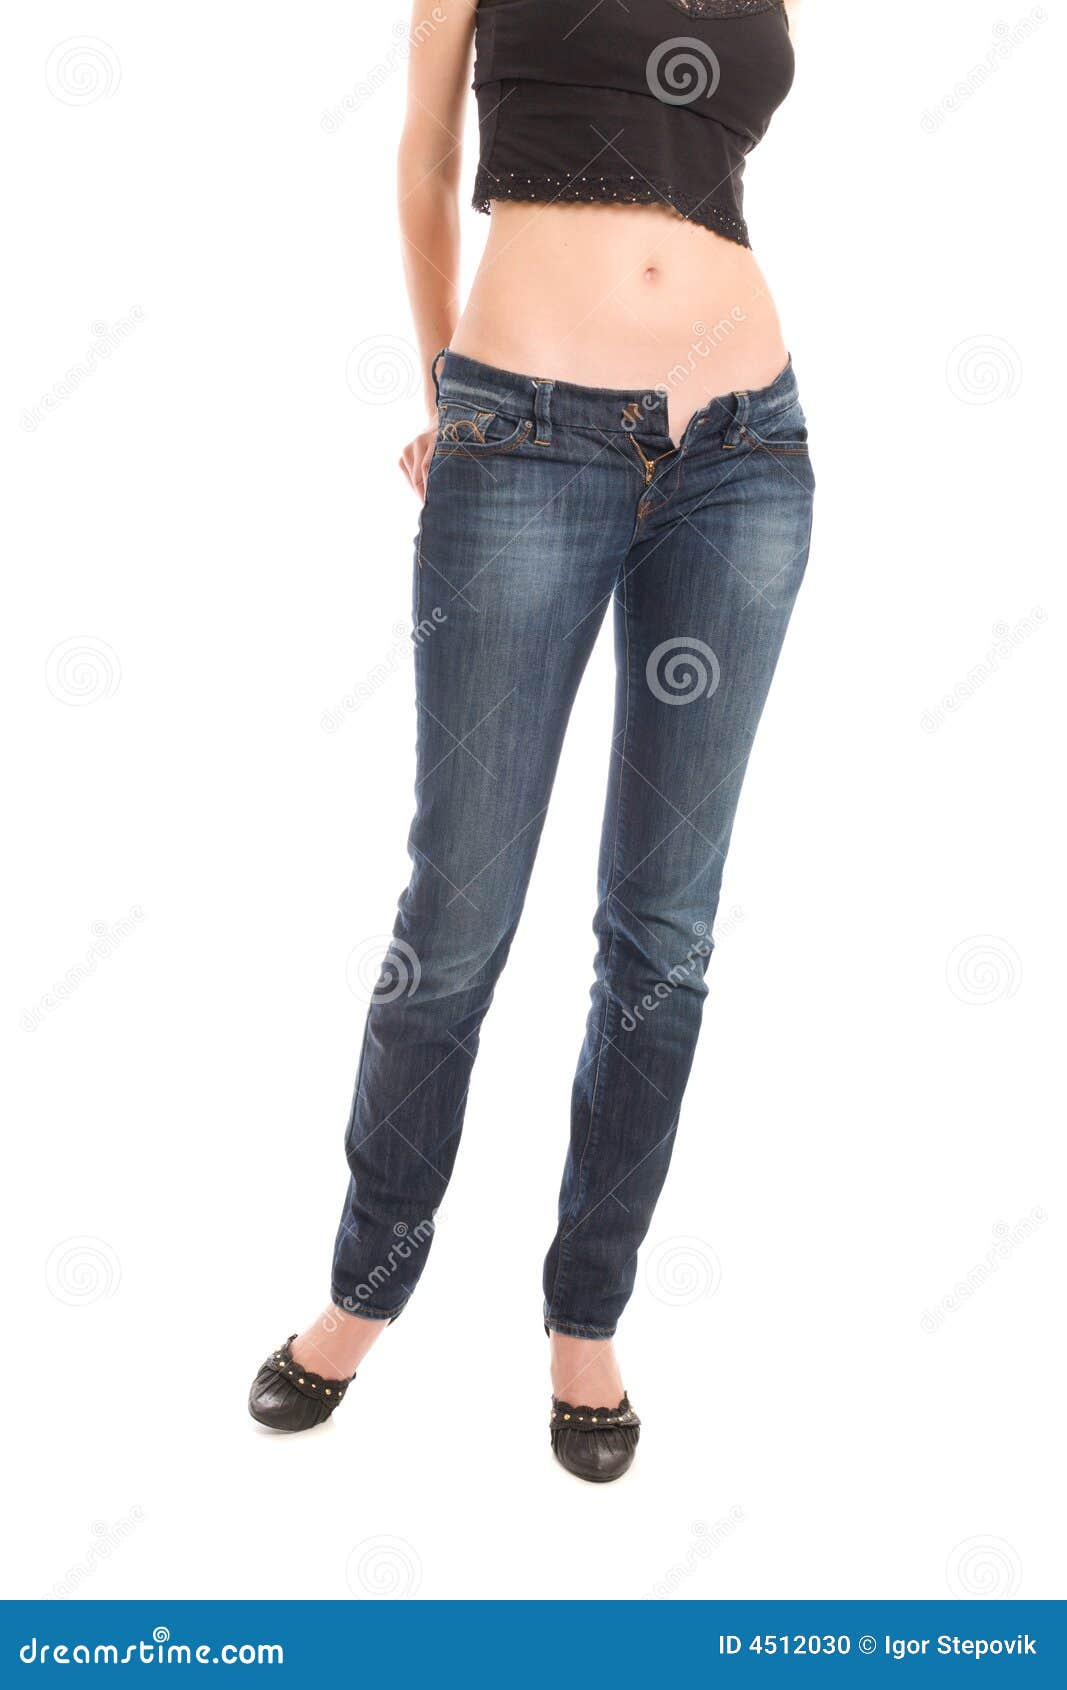 lovely girl undress blue jeans